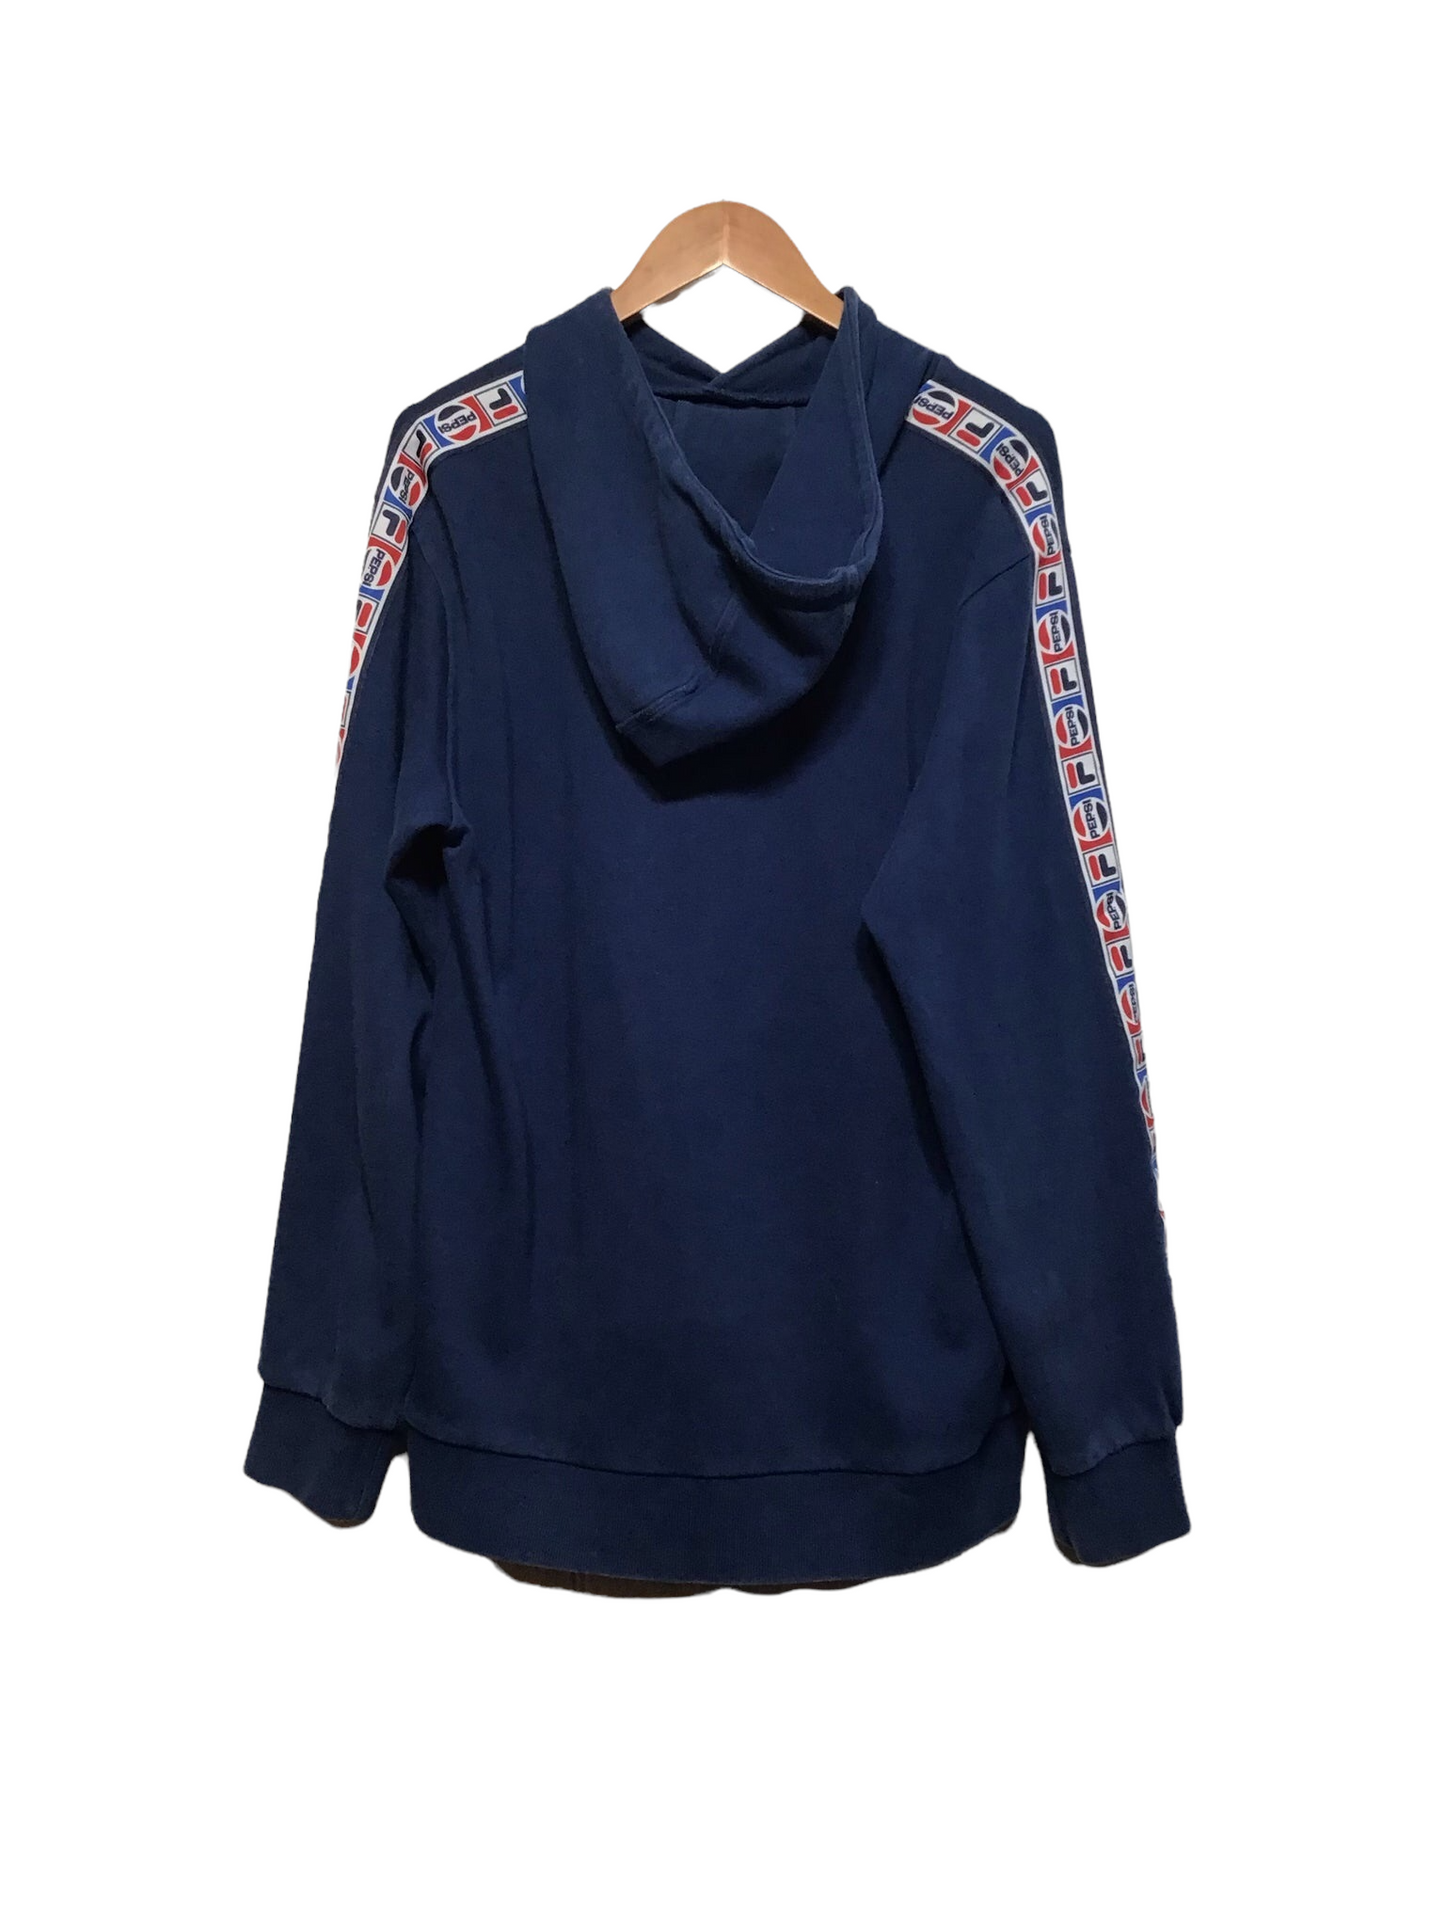 Fila x Pepsi Sweatshirt (Size L)